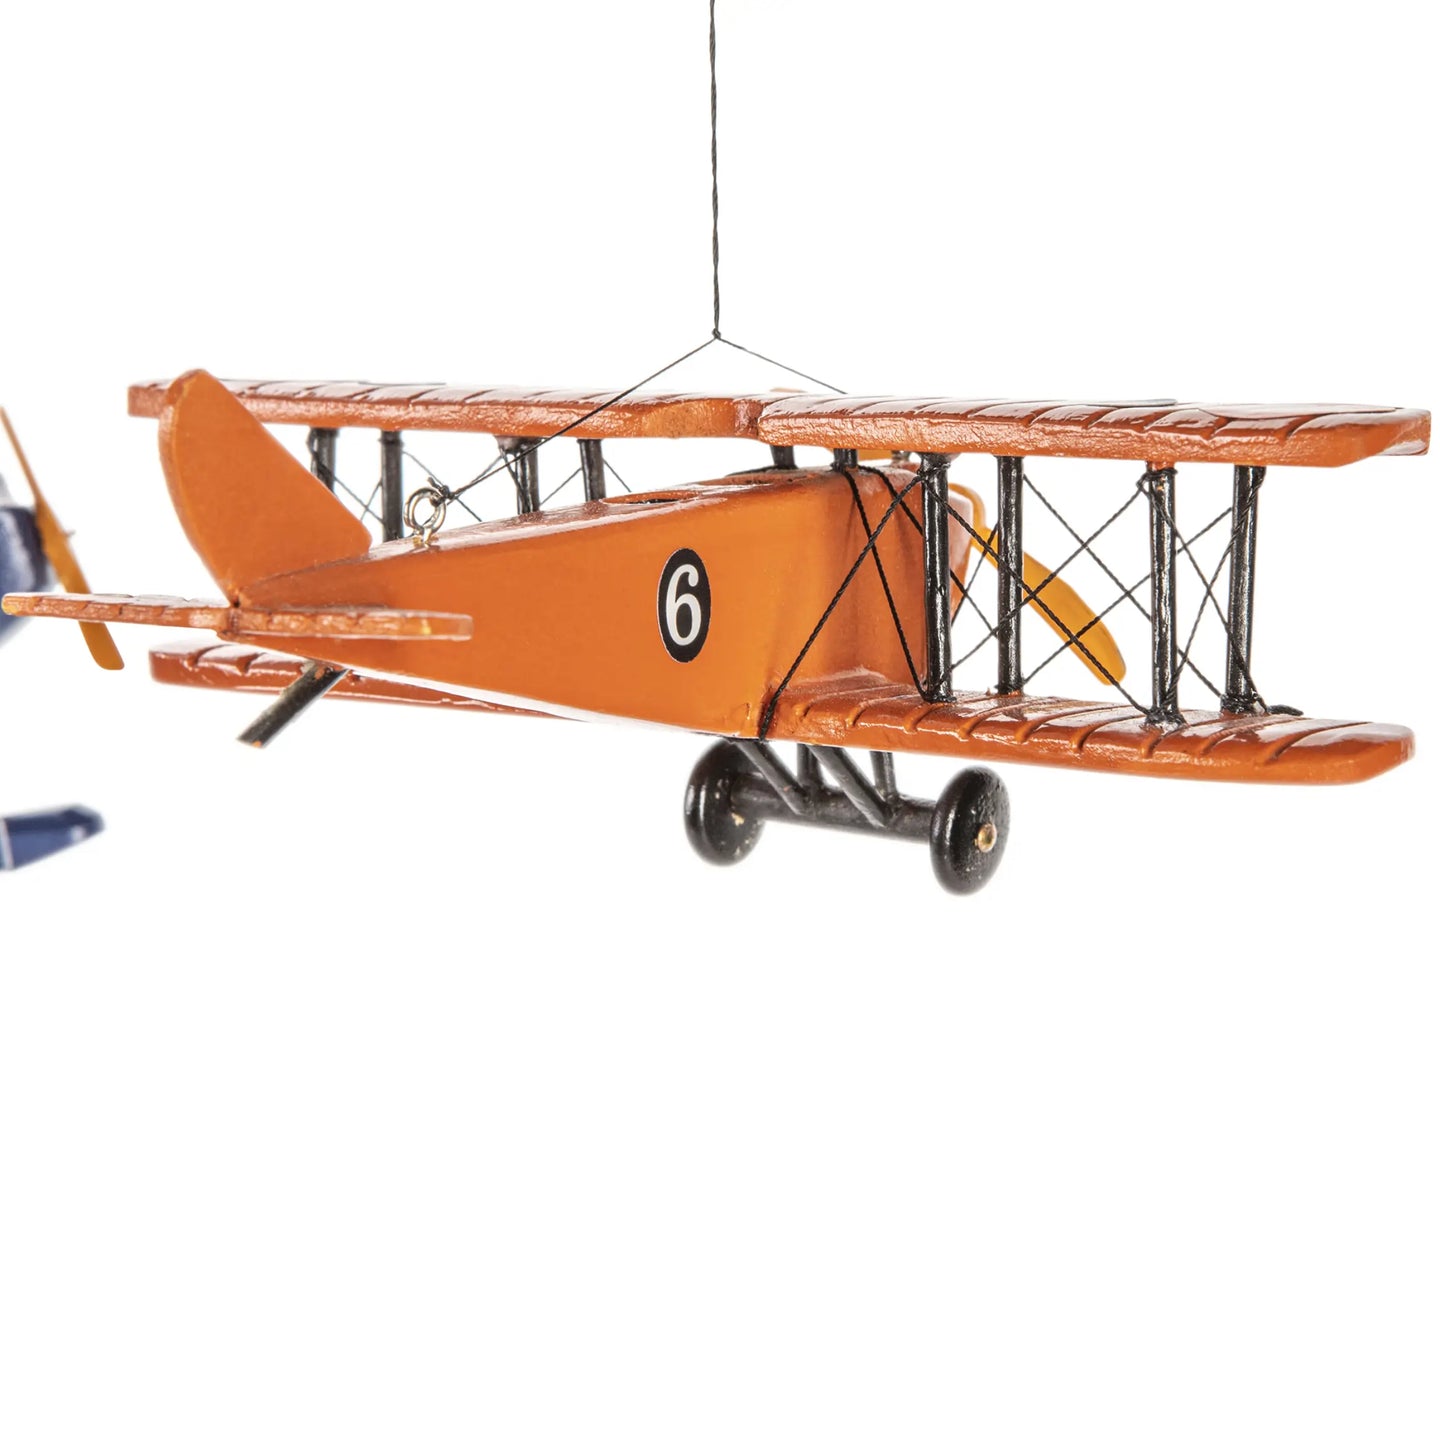 Authentic Models Flight Mobile, 1920 - AP120